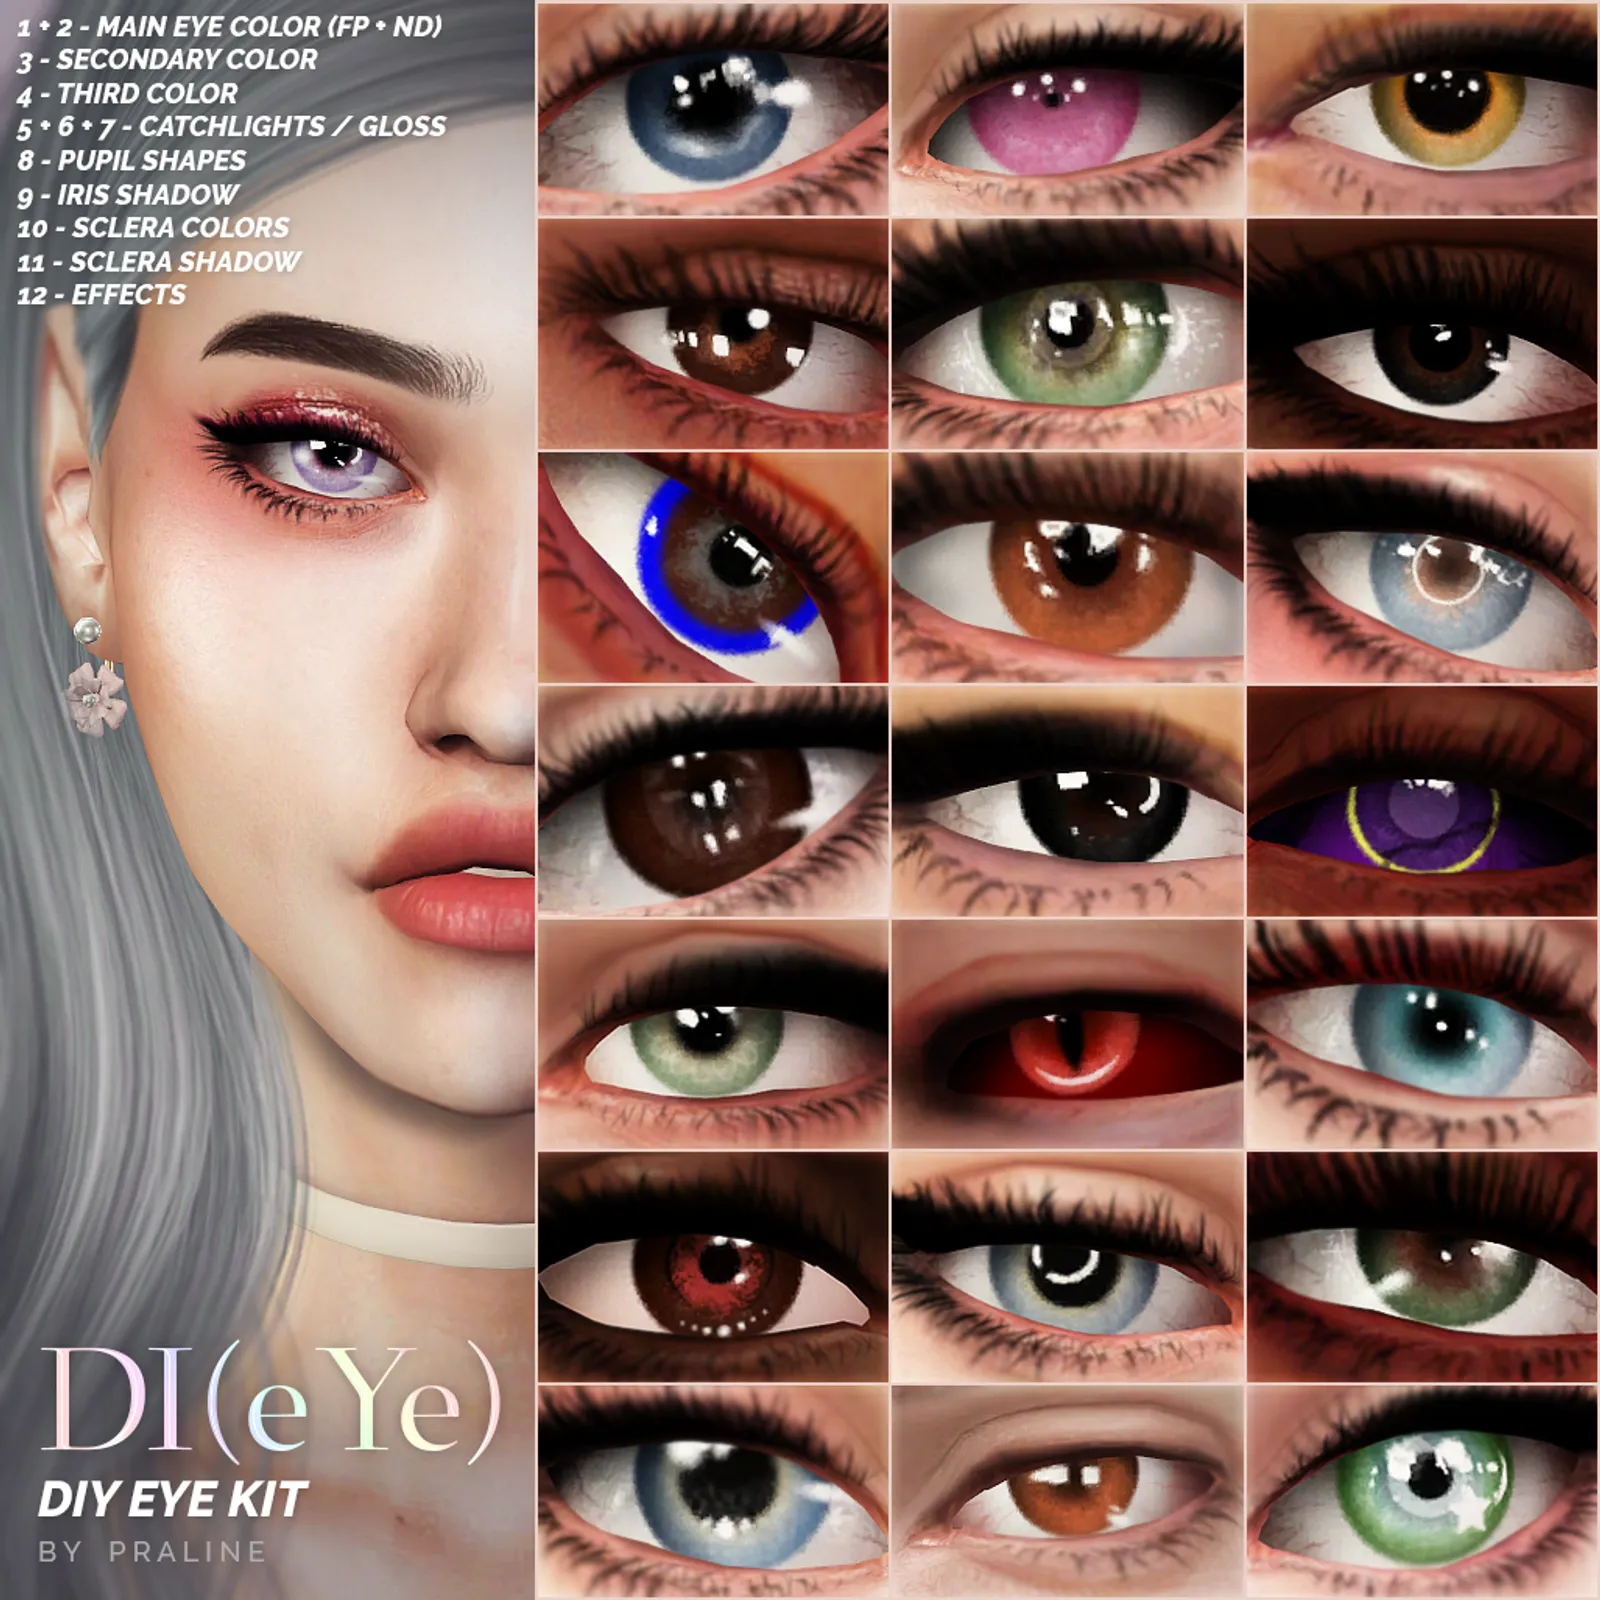 DI(eYE) - DIY Eye Kit